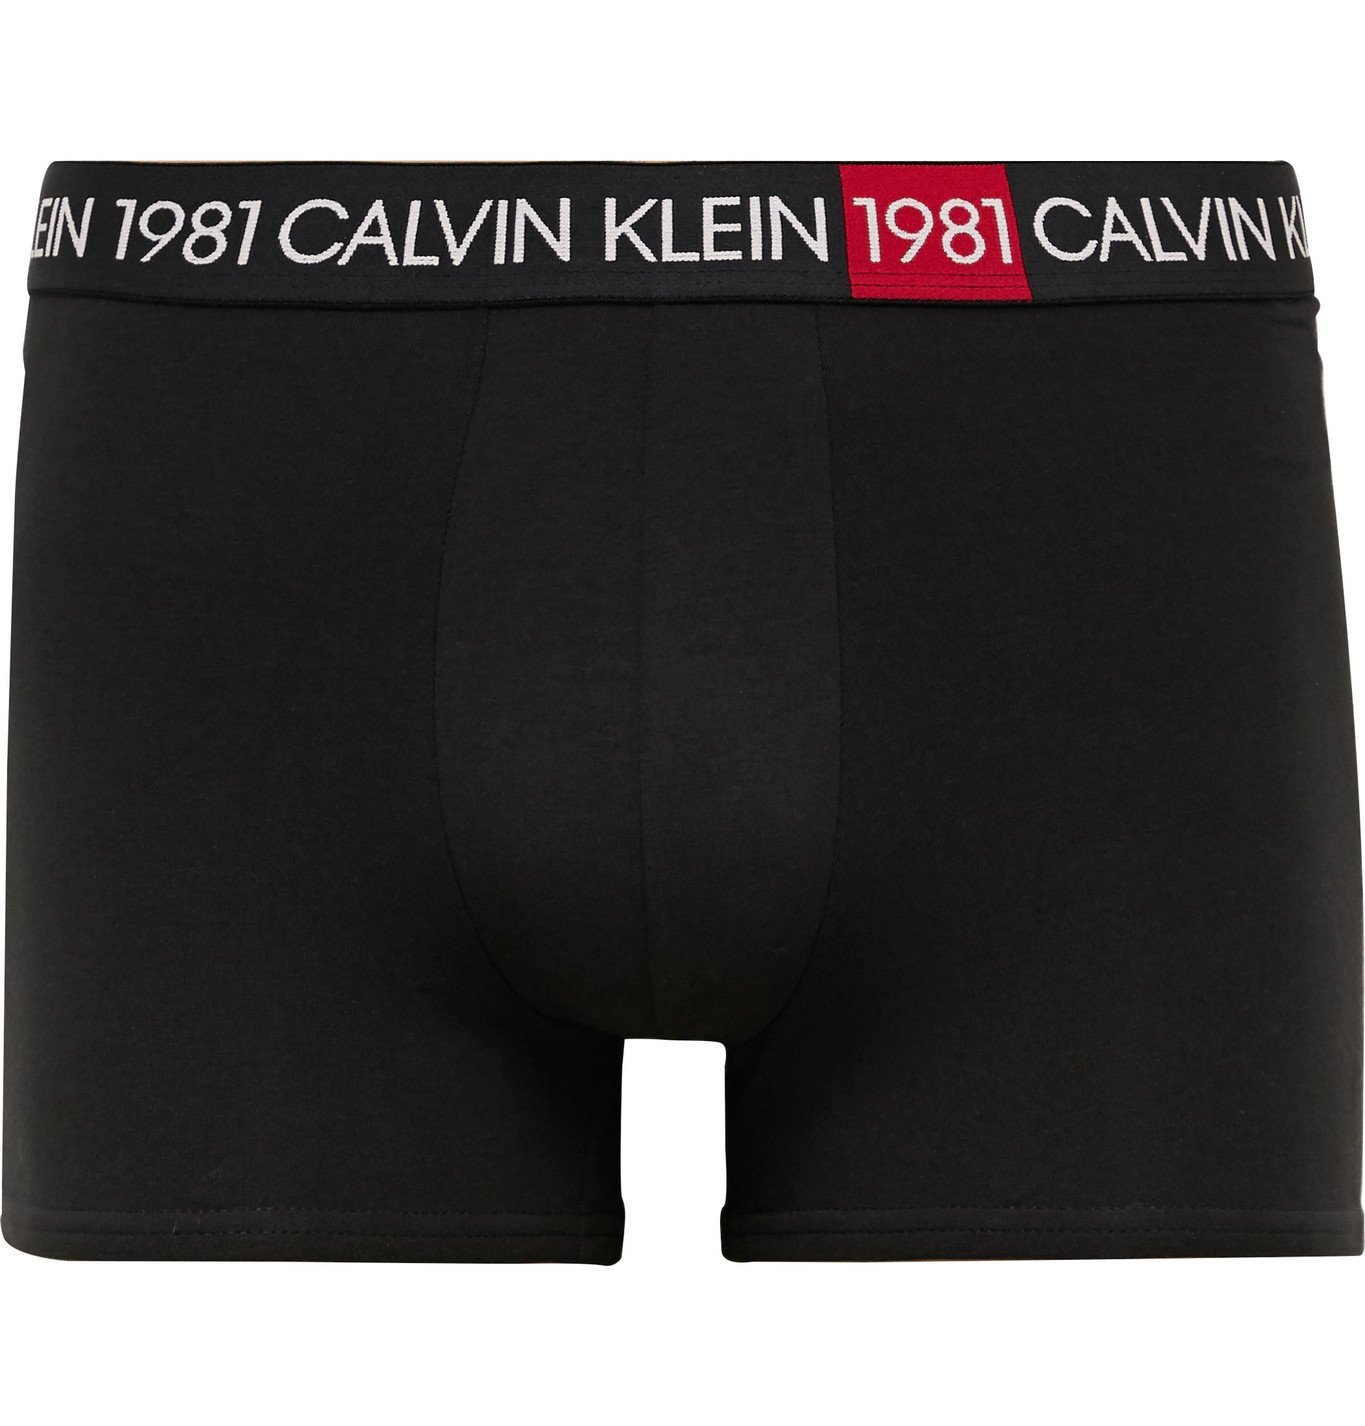 Top 61+ imagen calvin klein 1981 underwear